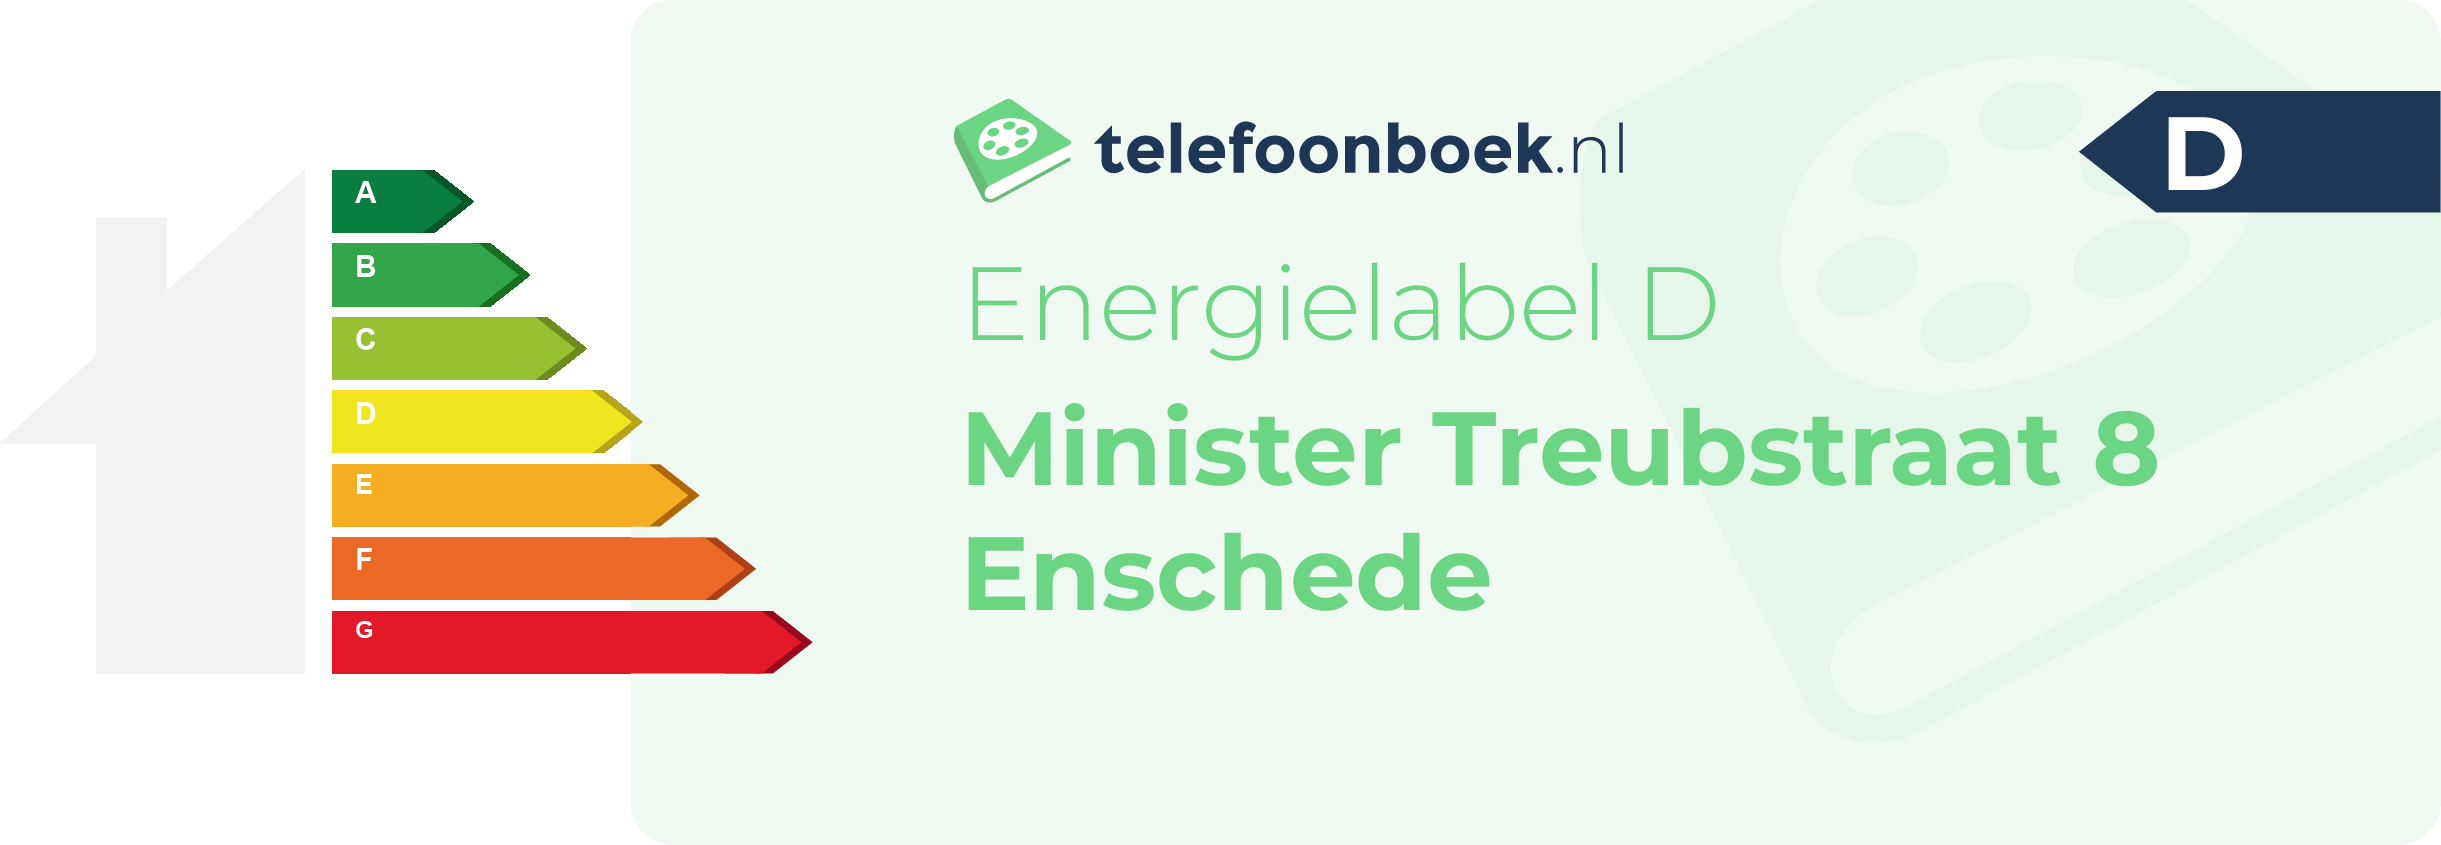 Energielabel Minister Treubstraat 8 Enschede